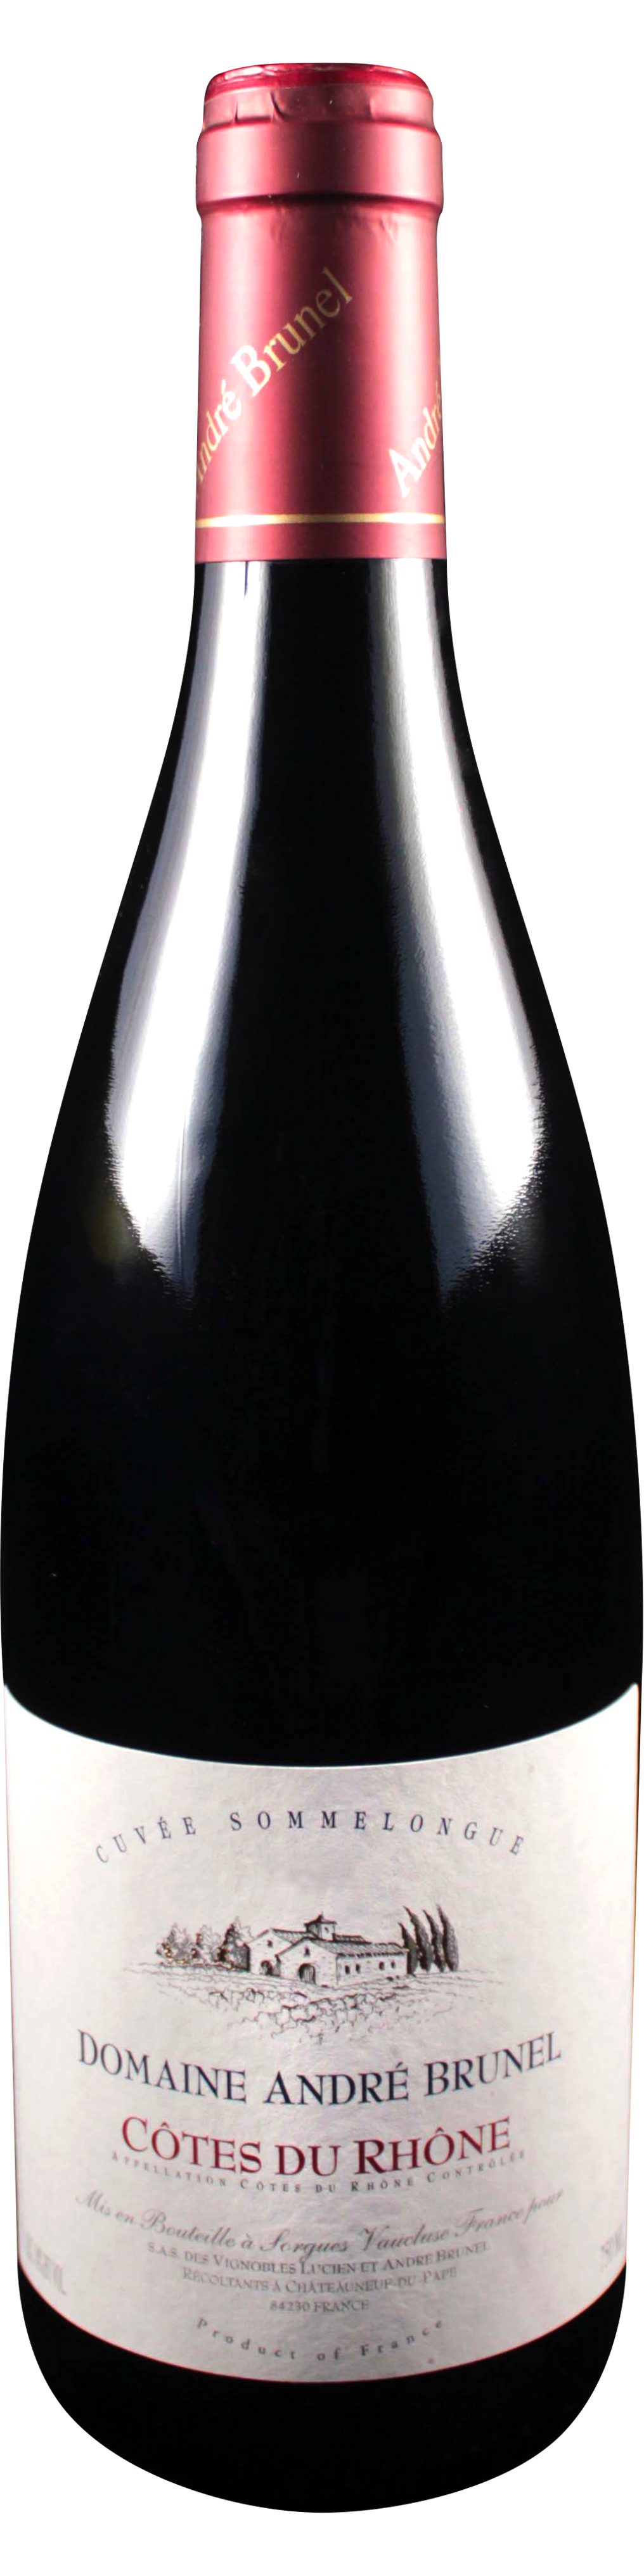 Bottle shot of 2011 Côtes du Rhône Rouge Sommelongue